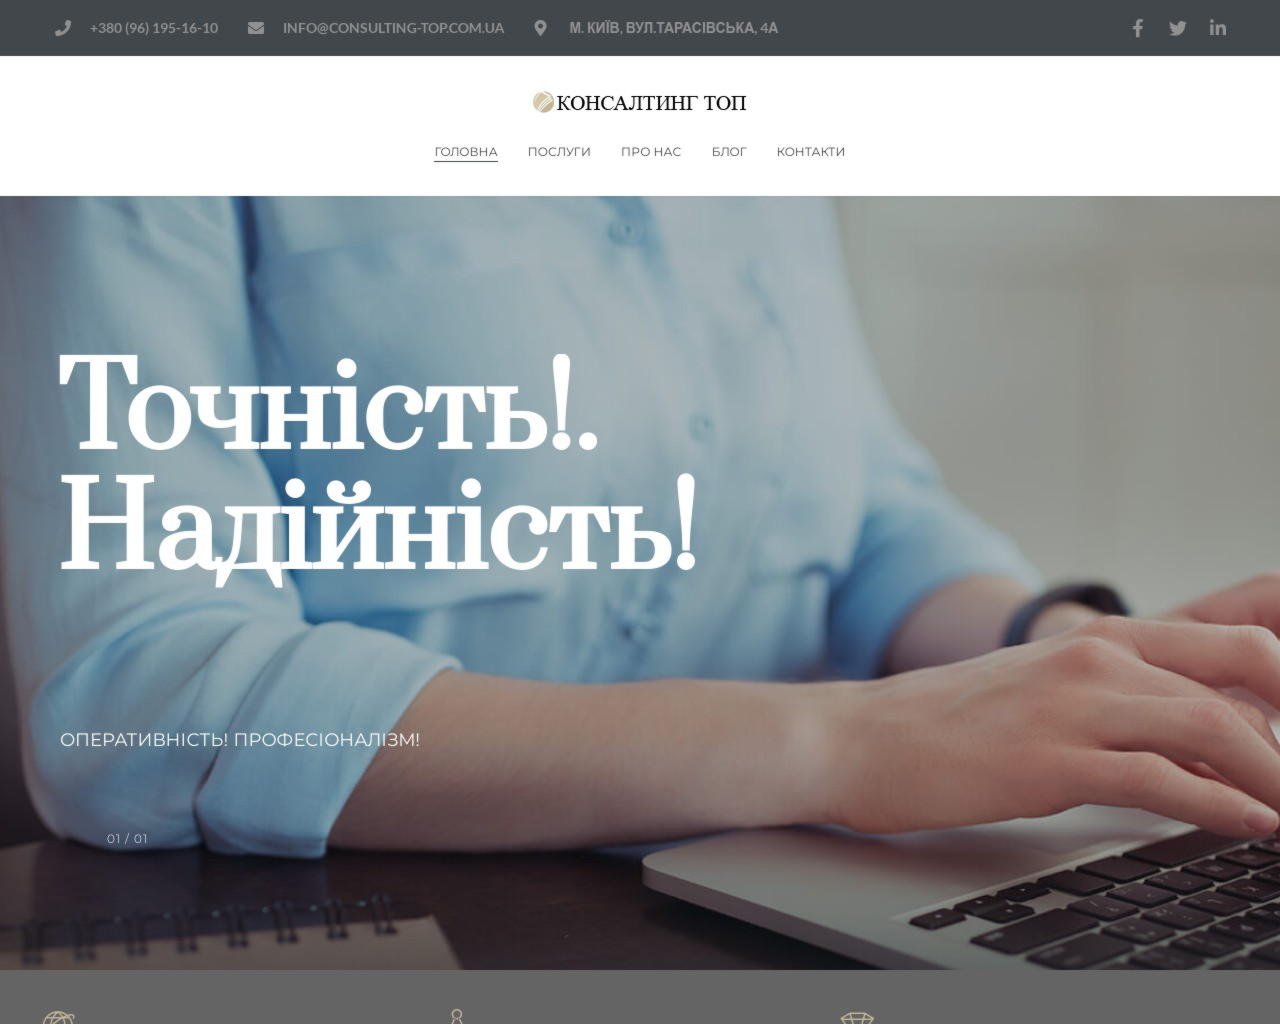 Изображение скриншота сайта - Компания Consulting-Top - бухгалтерские услуги по всей Украине.